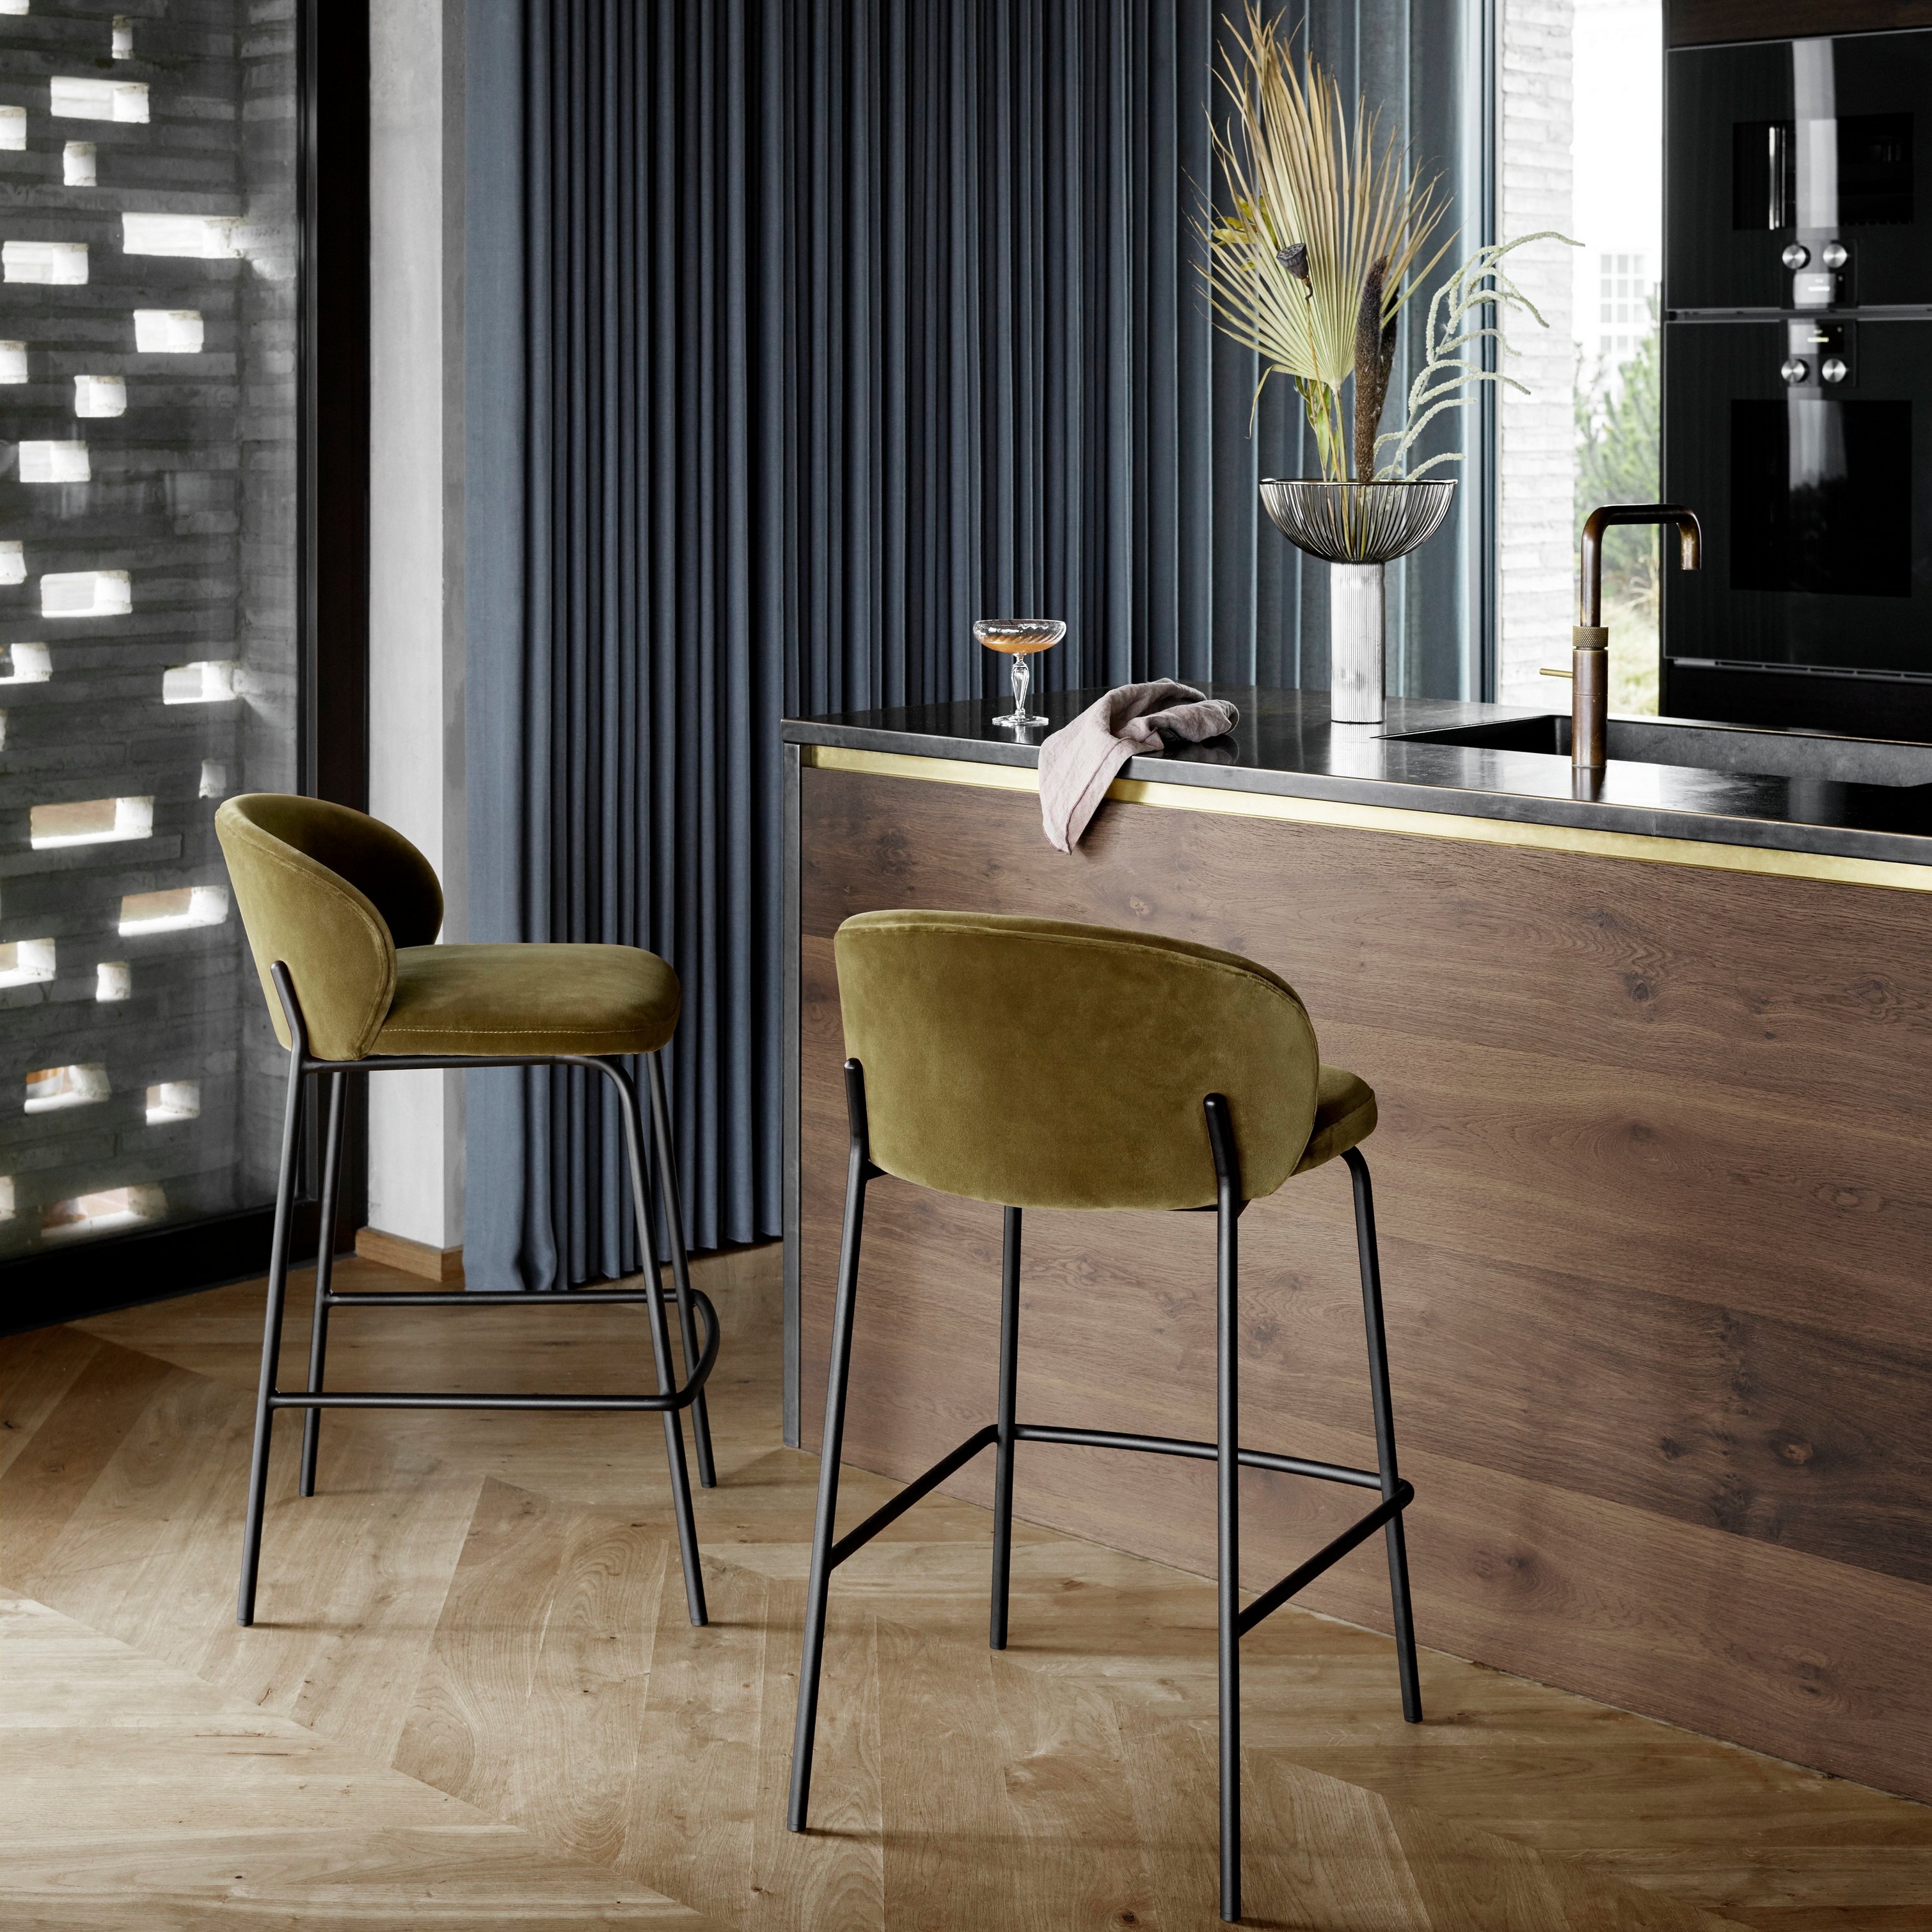 Barové stoličky v látke Velvet pri drevenom kuchynskom pulte s čiernymi spotrebičmi a závesným svietidlom.